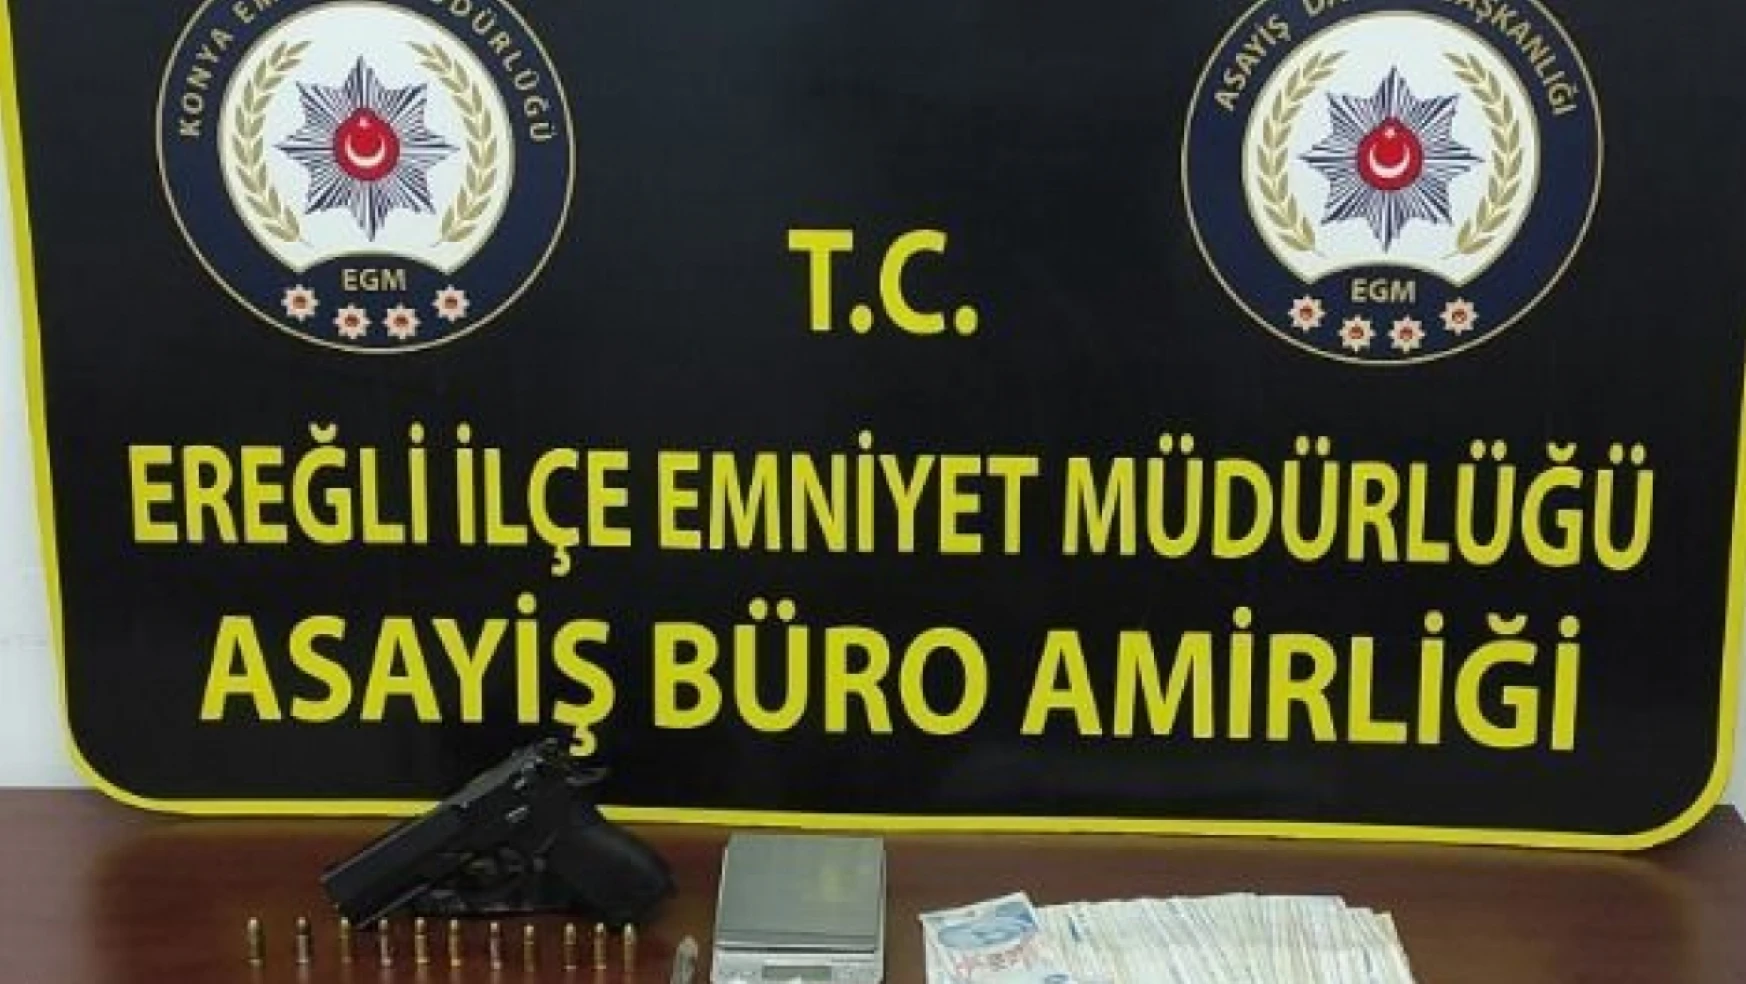 Konya'da silahlı yaralama olayının şüphelisi tutuklandı